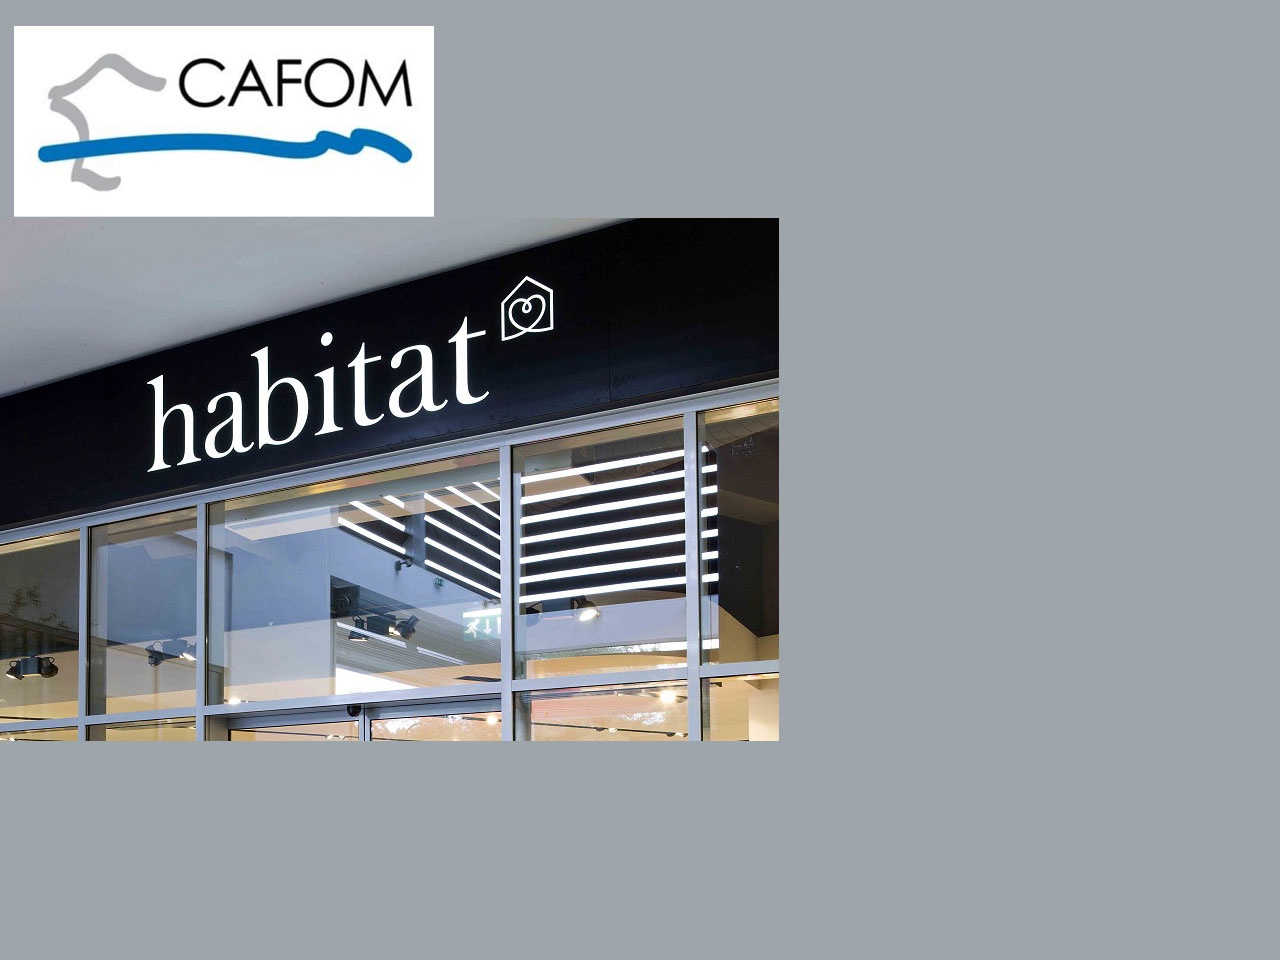 Le groupe Cafom annonce engager un processus de cession de sa filiale Habitat